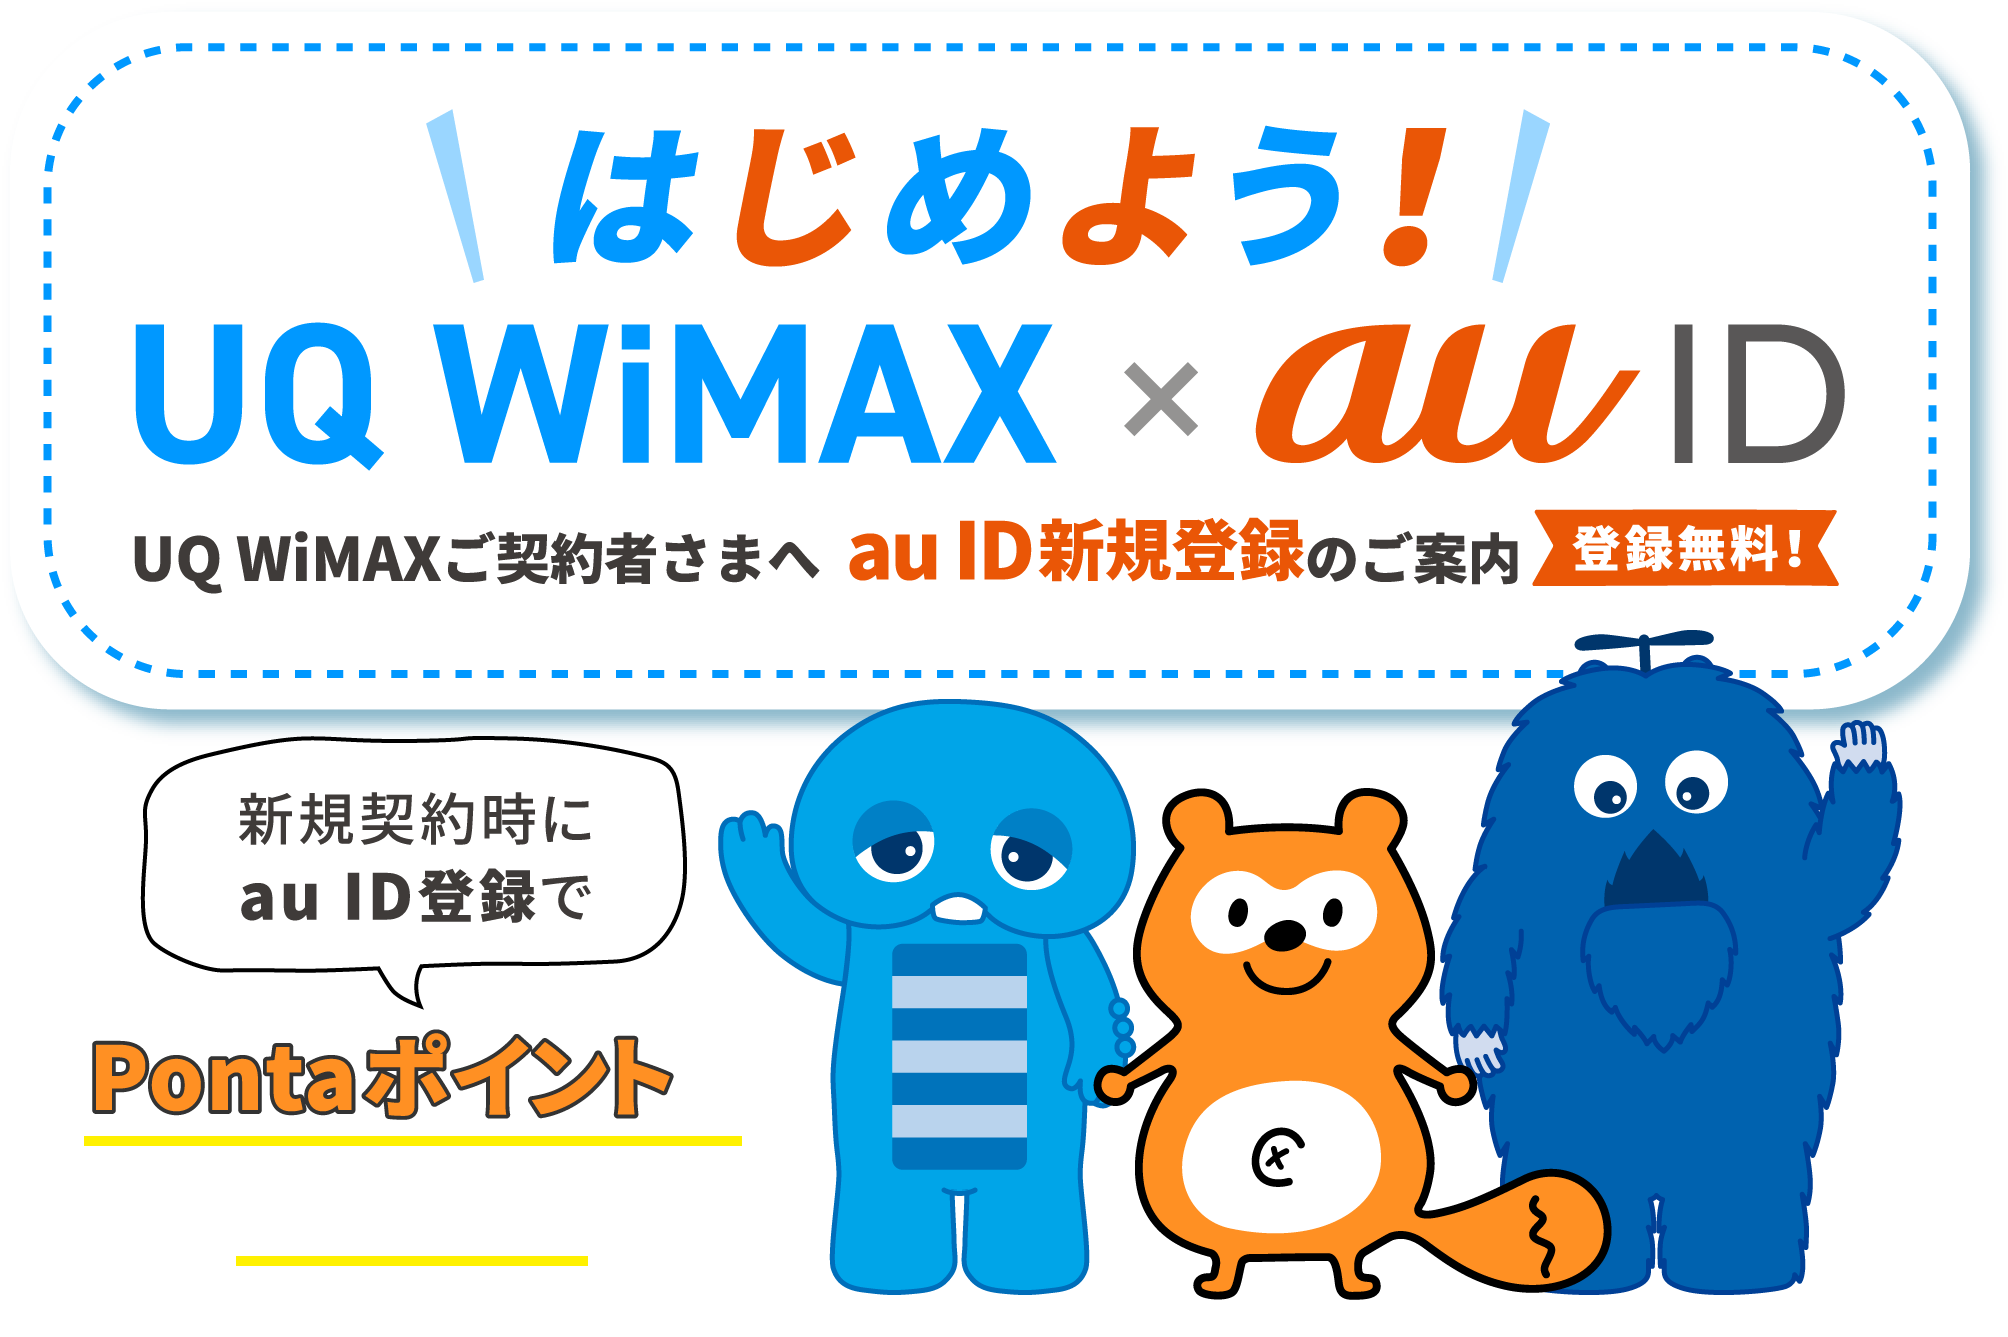 はじめよう！UQ WiMAX × au ID UQ WiMAXご契約者さまへ au ID新規登録のご案内 登録無料！ 新規契約時にau ID登録でPontaポイントがもらえる！